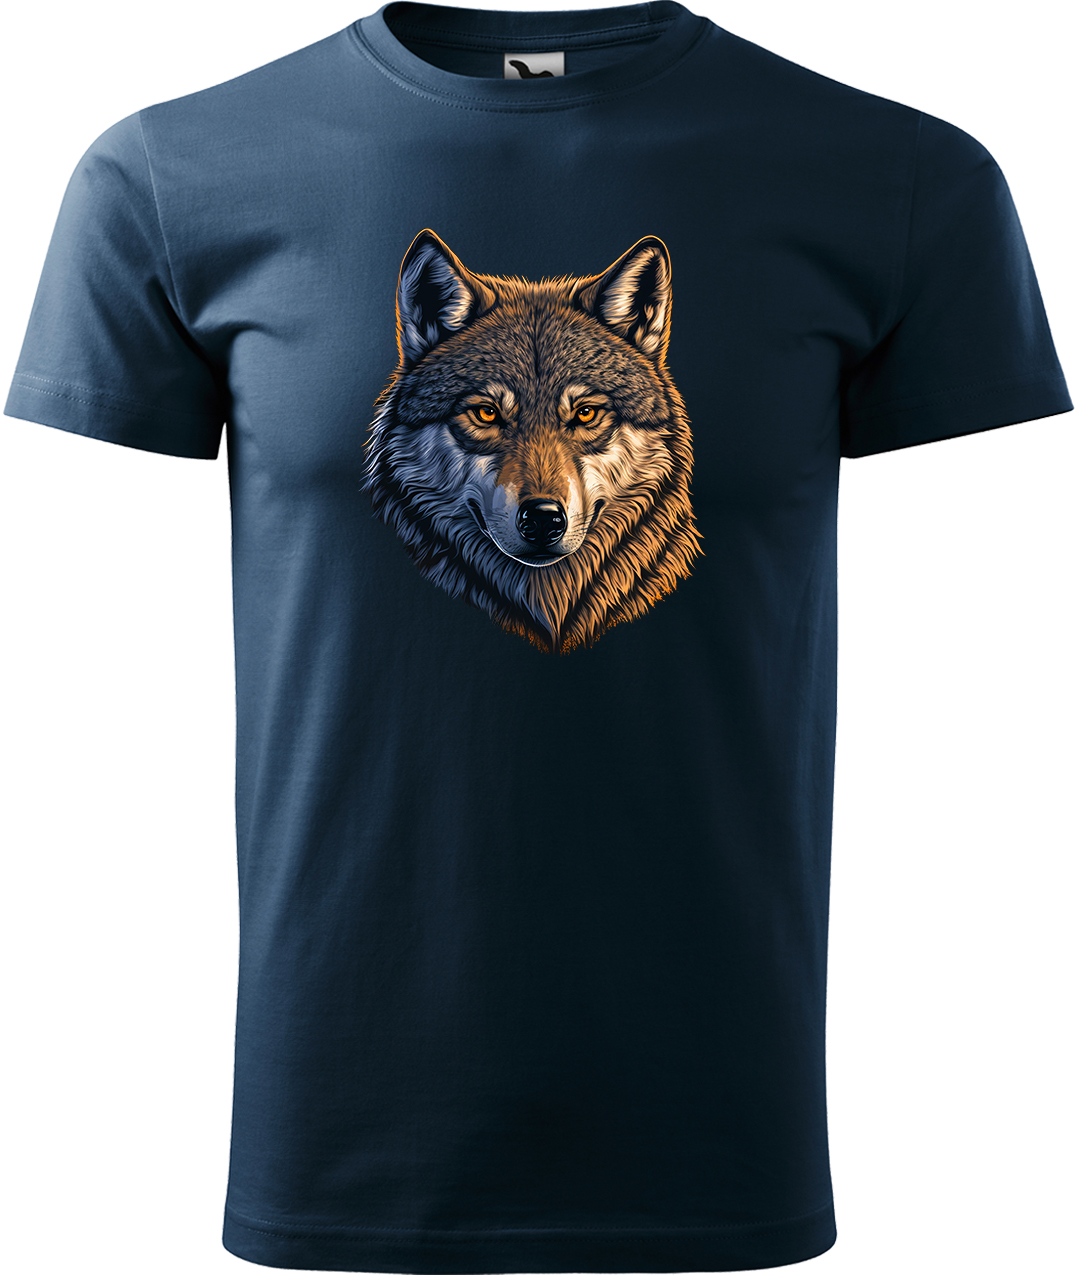 Pánské tričko s vlkem - Hlava vlka Velikost: 4XL, Barva: Námořní modrá (02), Střih: pánský